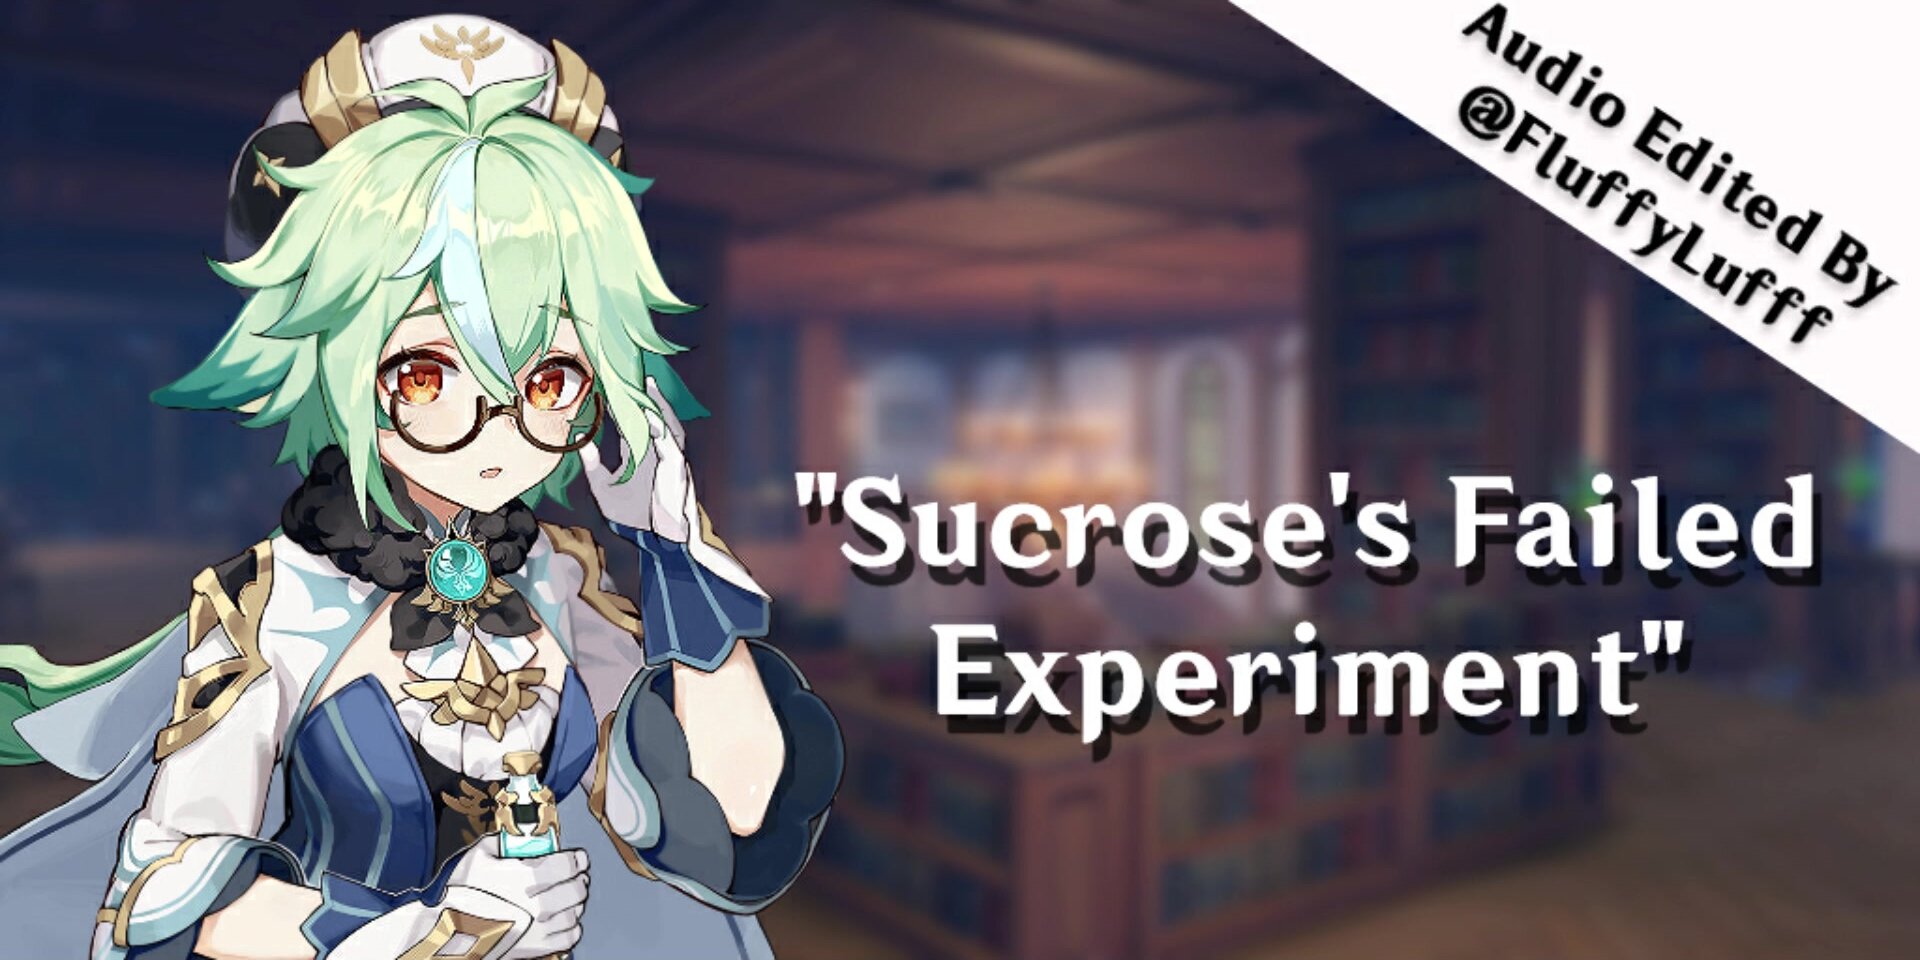 Sucrose's failed experiment